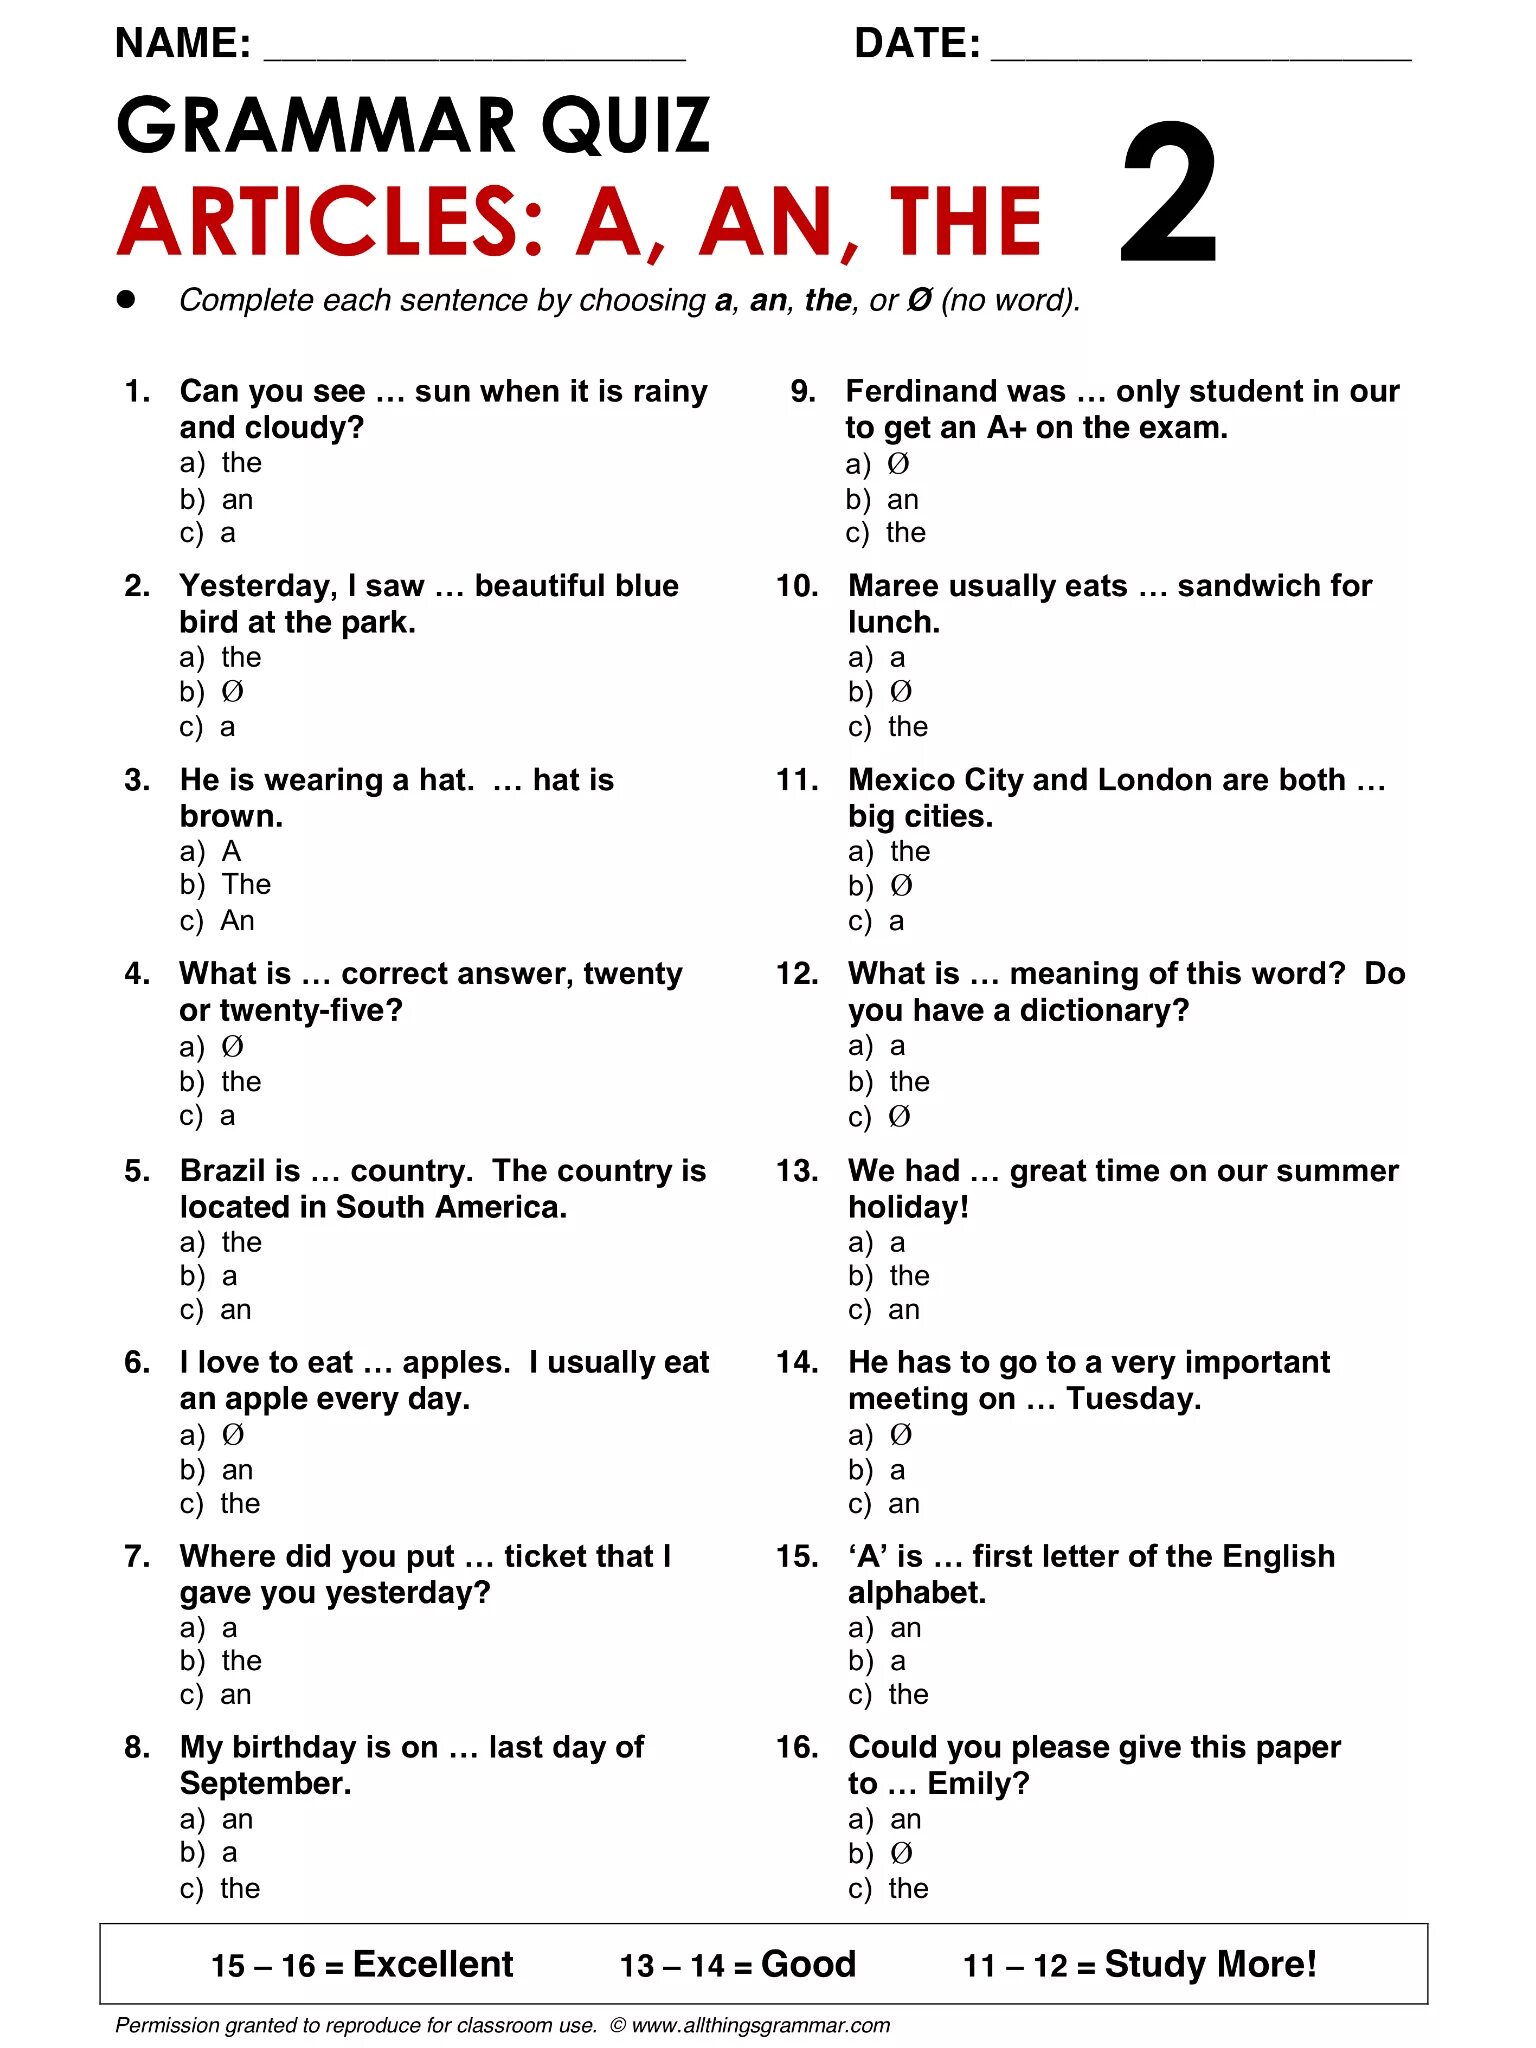 British tests. Тест на артикли в английском языке. Артикли в английском языке Worksheets. Артикли Worksheets. Упражнения на артикли в английском языке Worksheets.